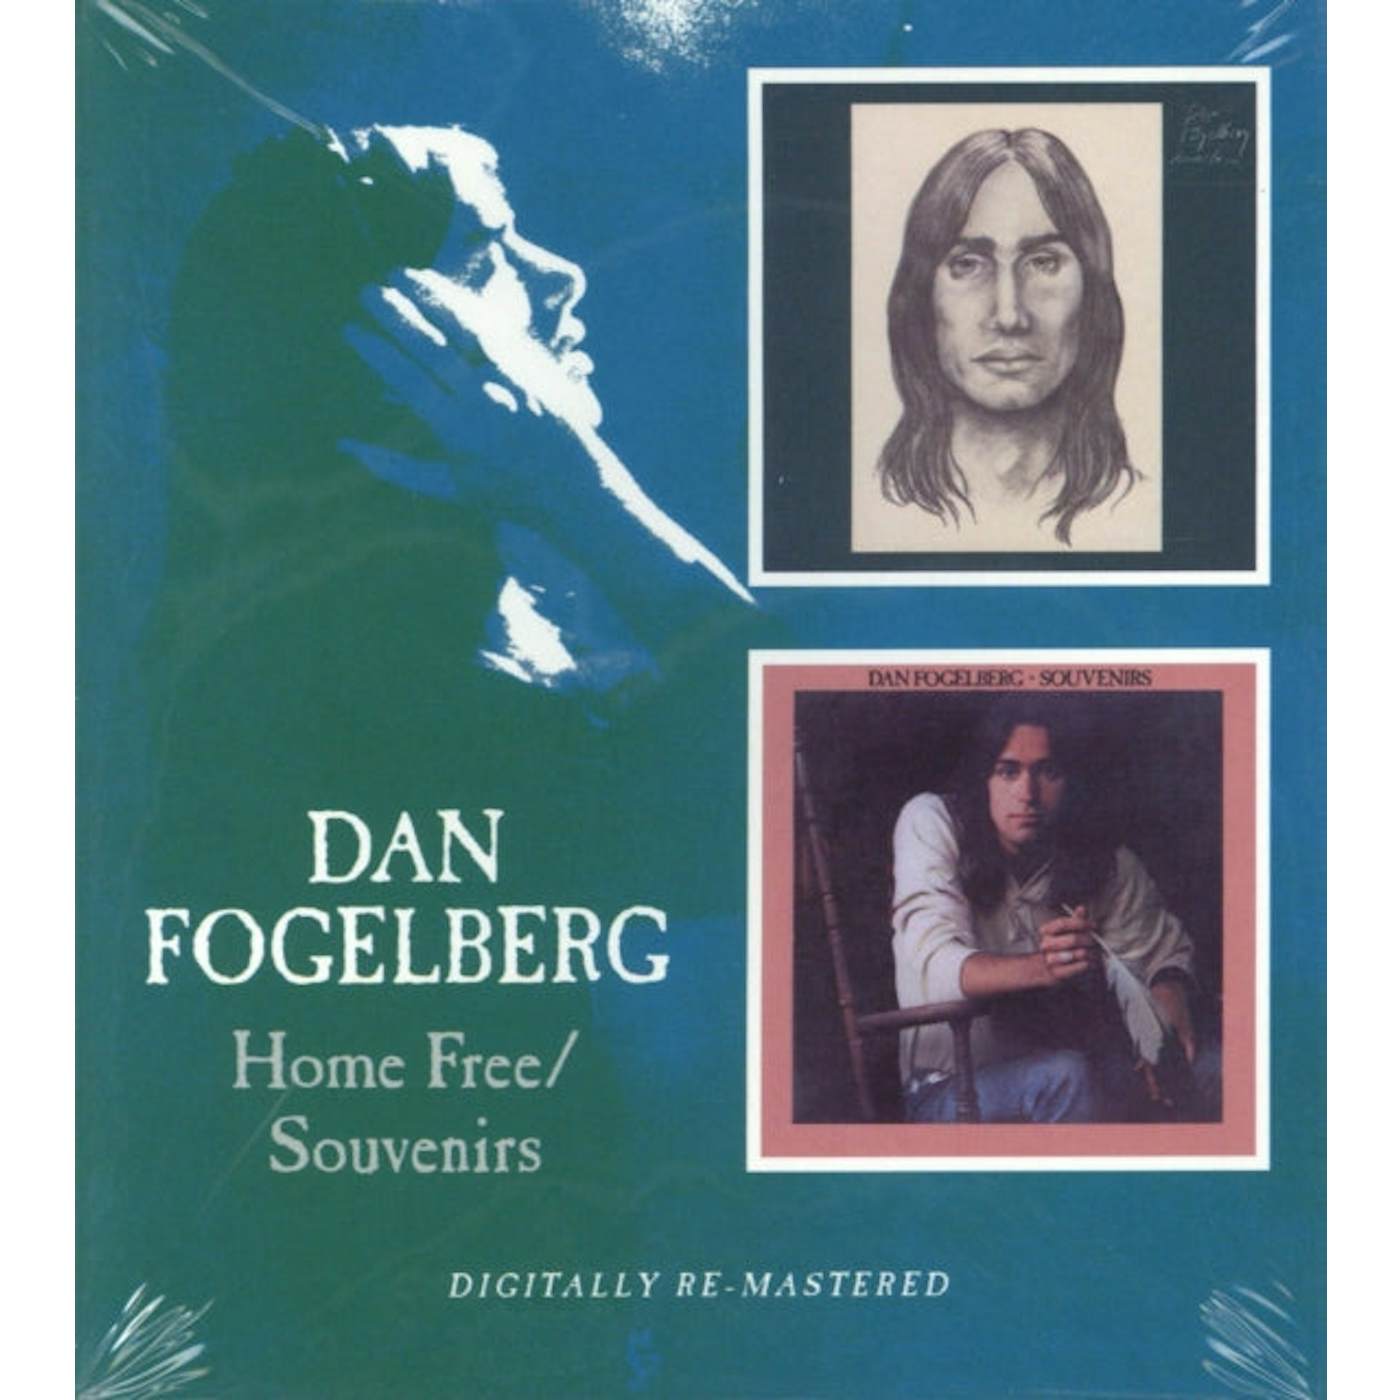 Dan Fogelberg CD - Home Free / Souvenirs